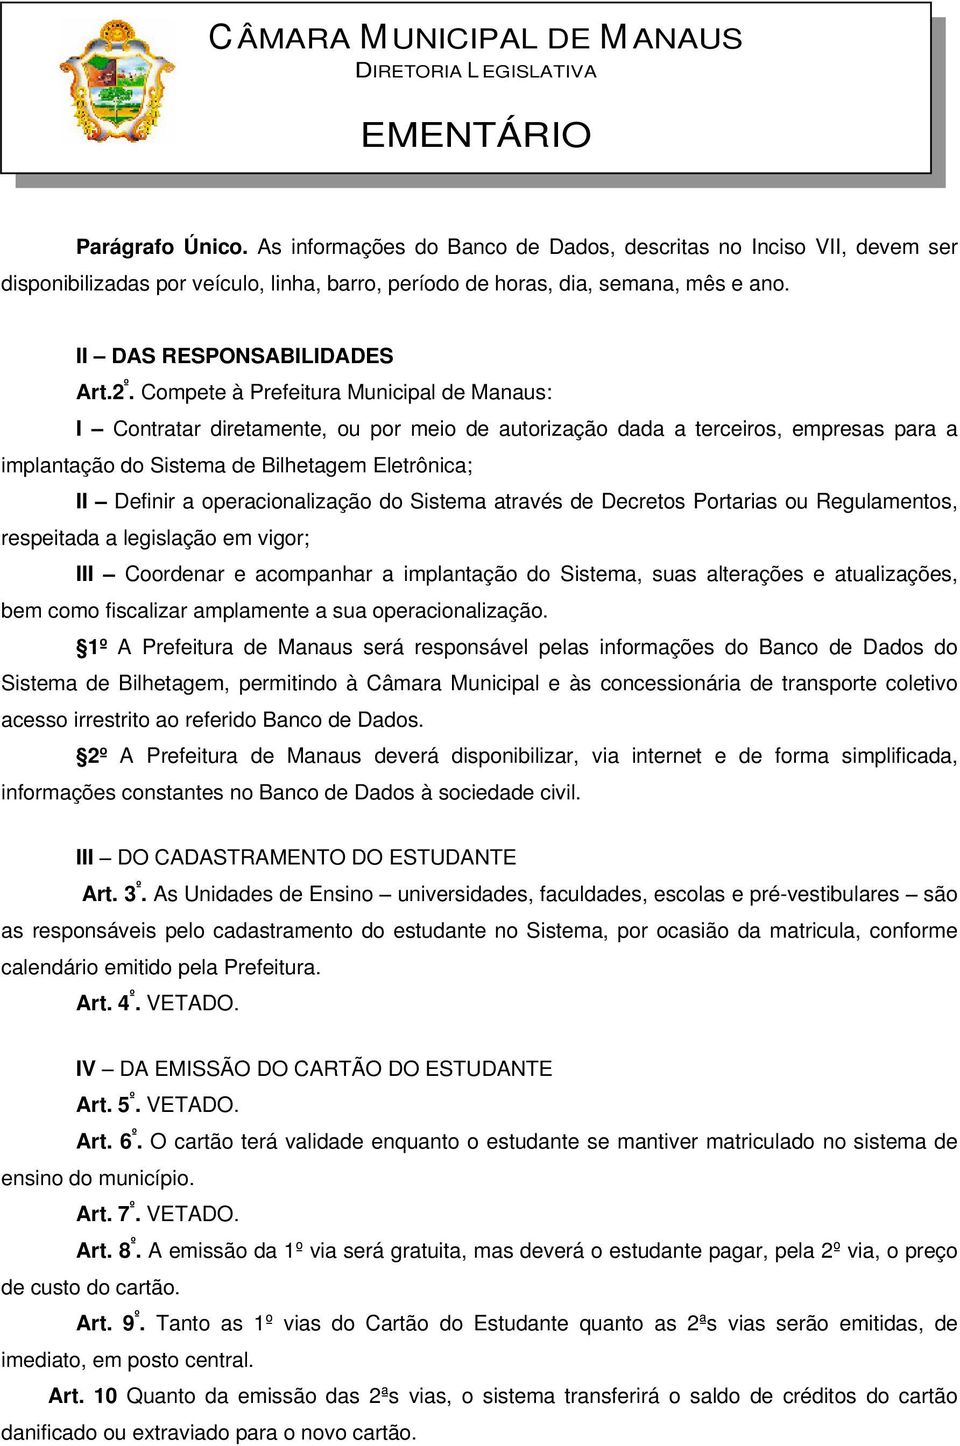 Compete à Prefeitura Municipal de Manaus: I Contratar diretamente, ou por meio de autorização dada a terceiros, empresas para a implantação do Sistema de Bilhetagem Eletrônica; II Definir a